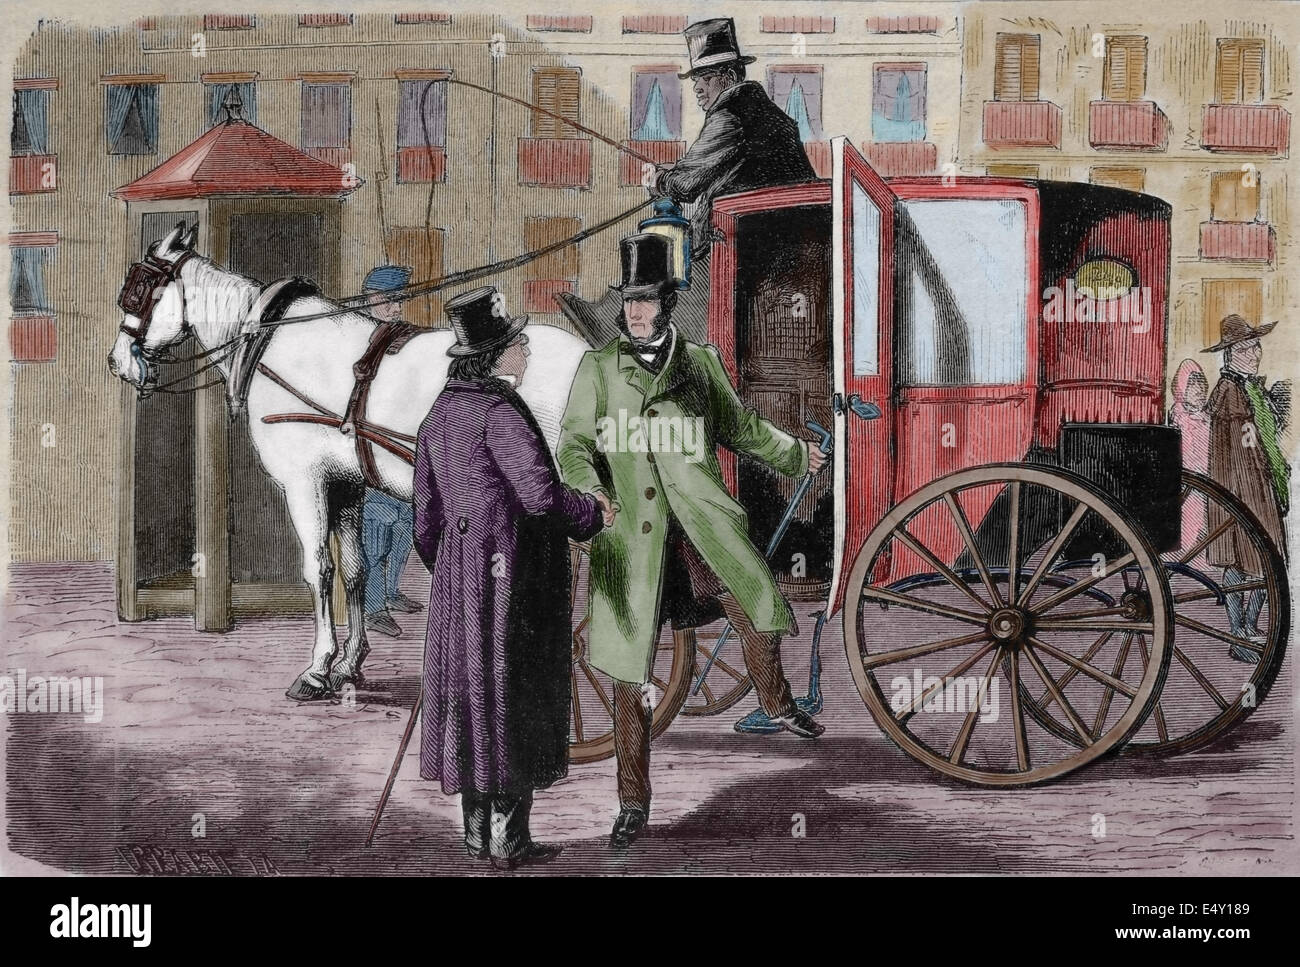 Transport-Geschichte. Sorgfalt. Erstellt von Irrabieta, 19. Jahrhundert Gravur. Stockfoto